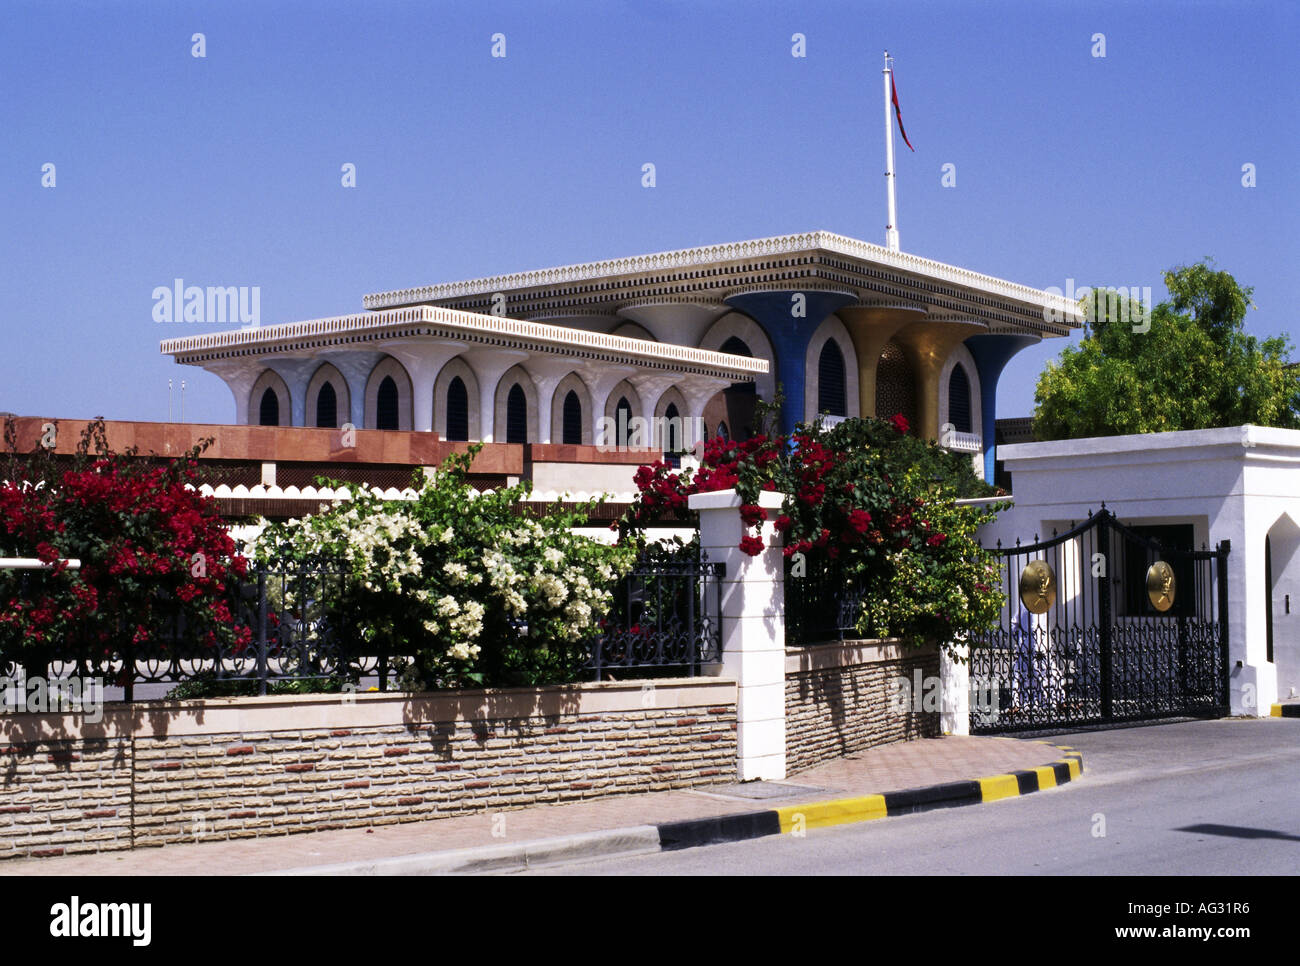 Géographie / voyage, Oman, Muscat, bâtiments, Palais du Sultan Qaboos, le Sultan Qaboos bin Said Al Said, vue extérieure, Additional-Rights Clearance-Info-Not-Available- Banque D'Images